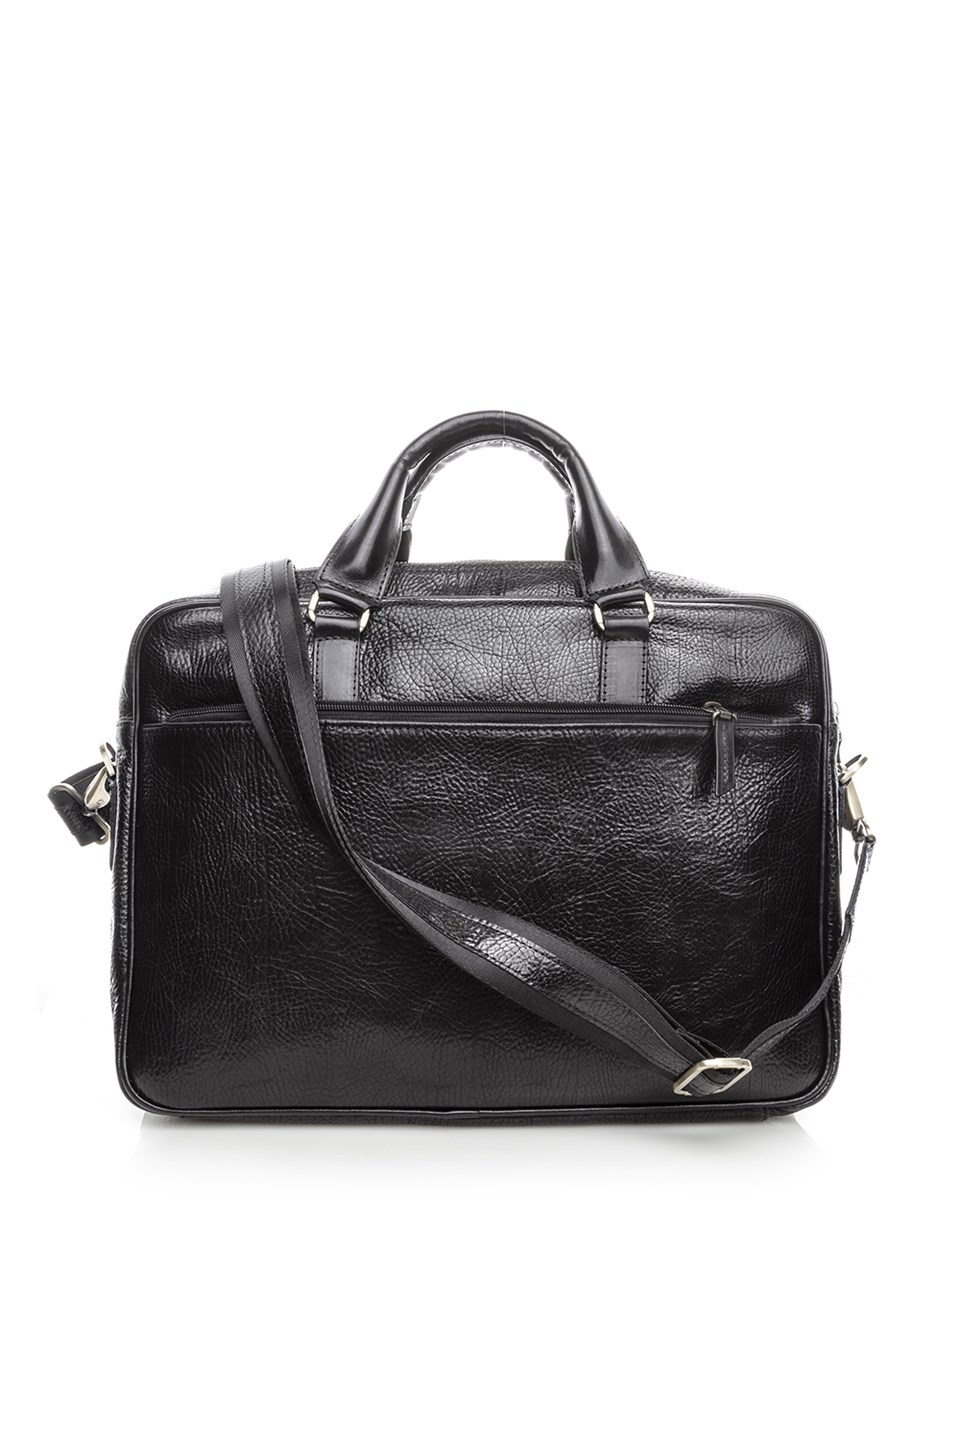 Argus Men's Shoulder Bag Black Leather - İLVİ